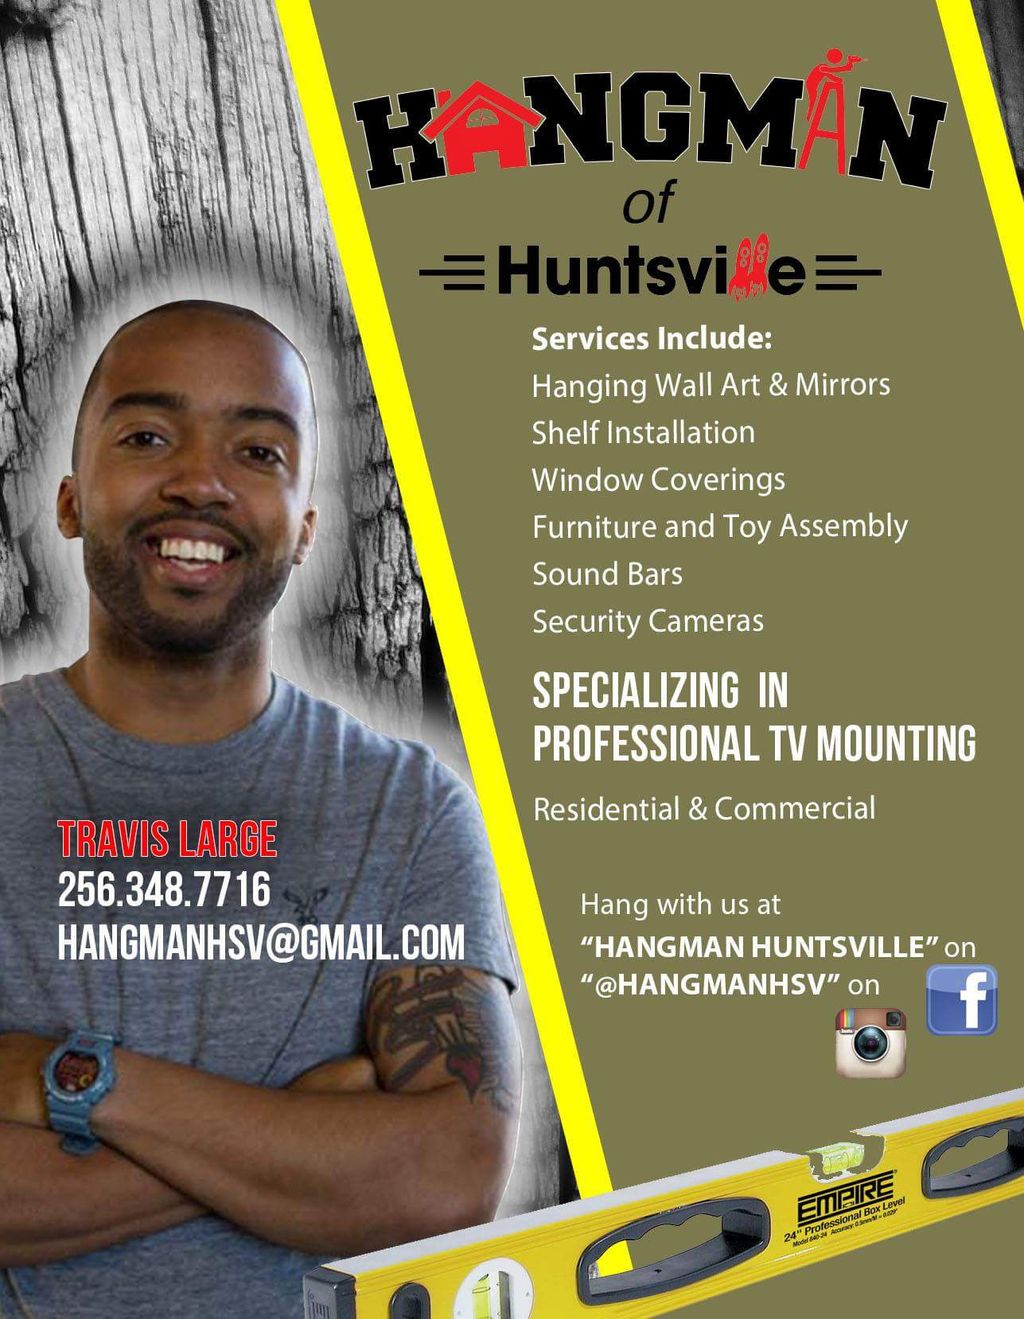 Hangman of Huntsville